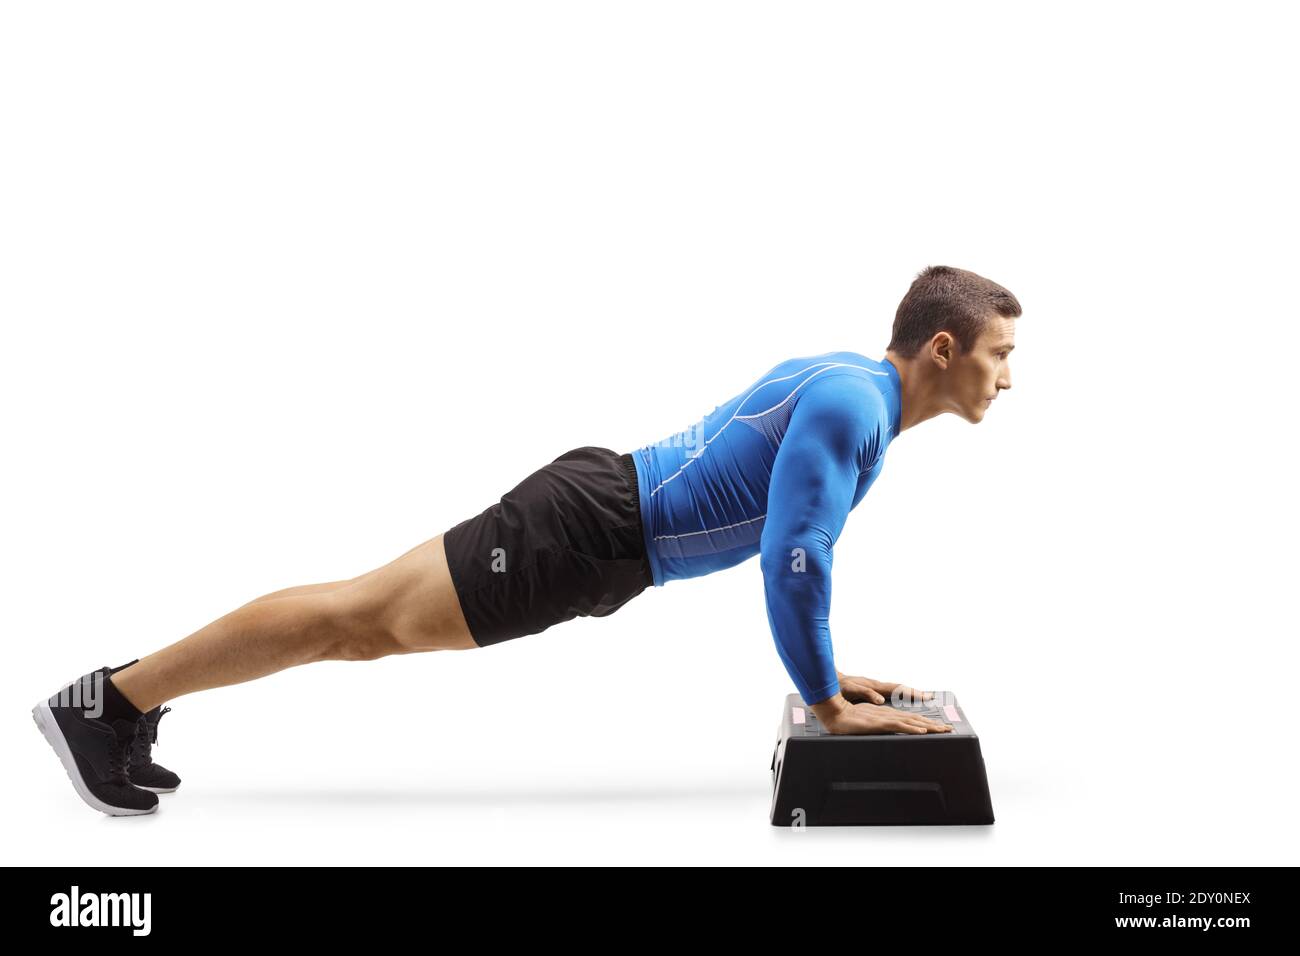 Homme musclé exerçant des push-ups sur une plate-forme aérobie STEP isolé sur fond blanc Banque D'Images